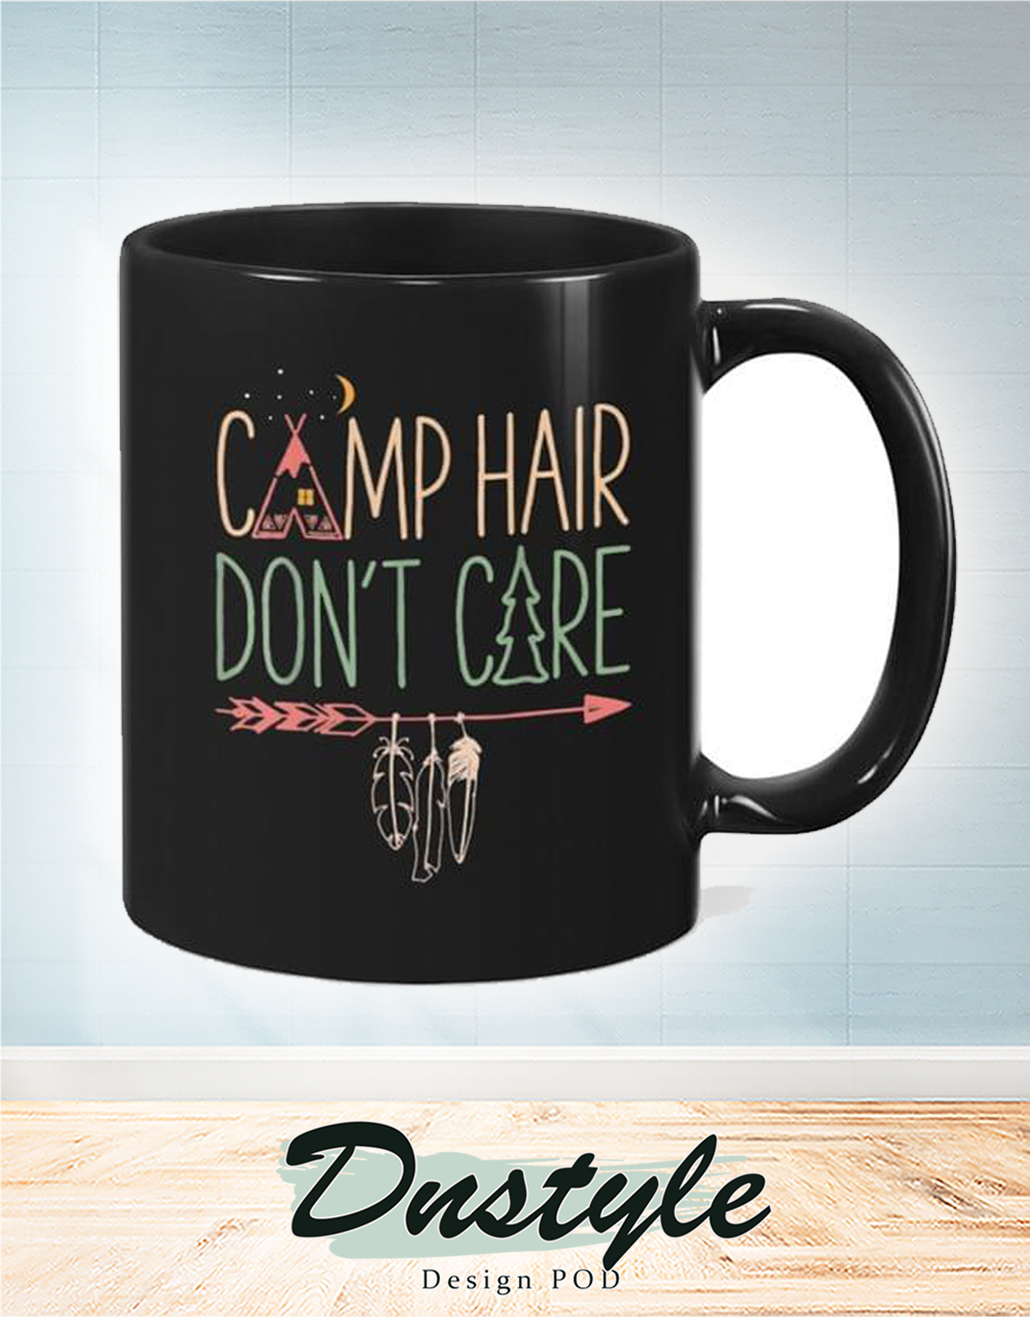 Camp hair don't care mug 1